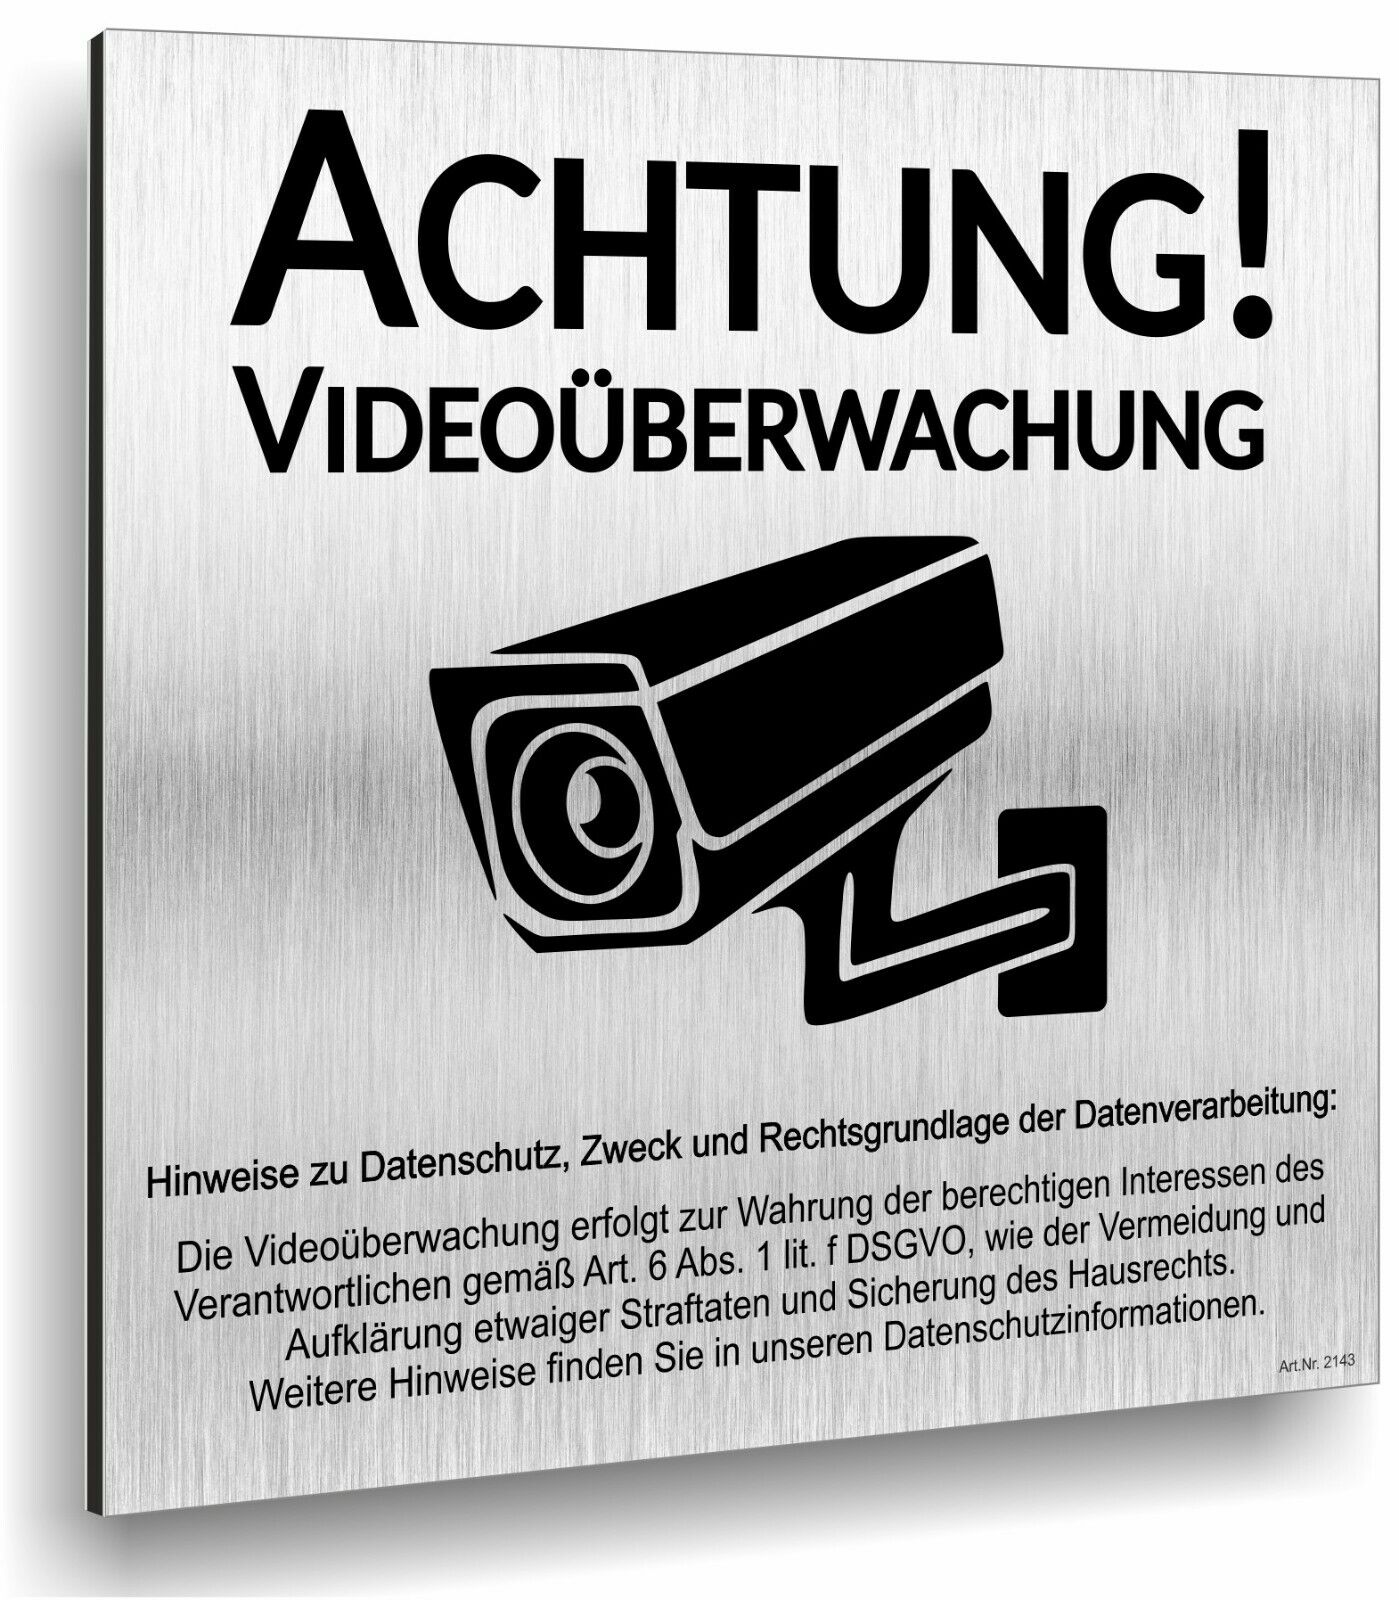 Alu Schild Achtung Videoüberwachung DSGVO Wetterfest 12x12cm Selbstklebend A2143